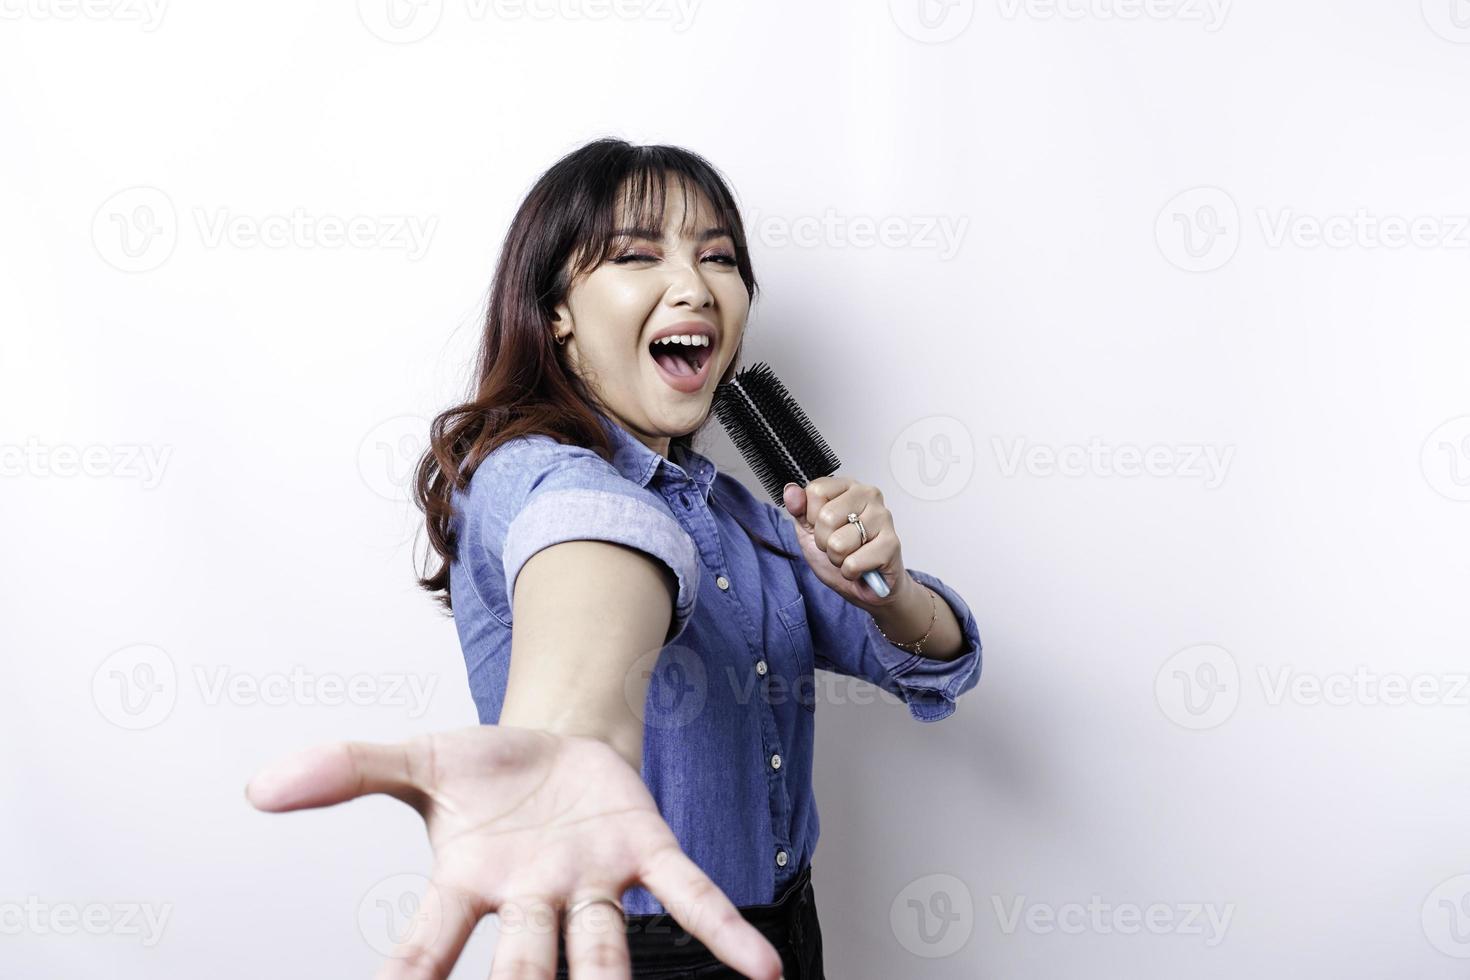 retrato de mulher asiática despreocupada, se divertindo karaokê, cantando no microfone em pé sobre fundo branco foto